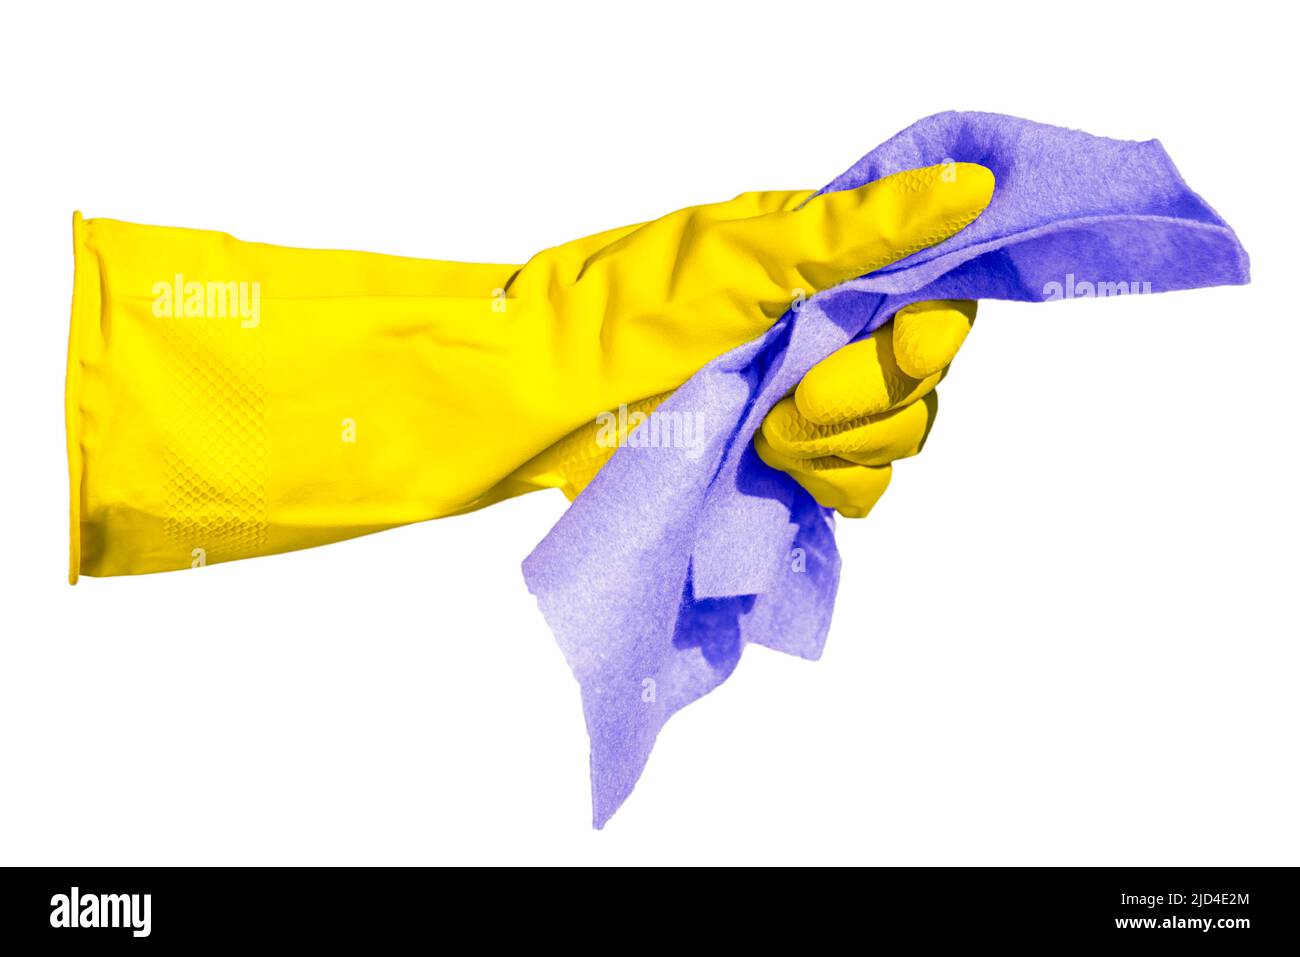 Hand in einem gelben Handschuh hält einen Lappen für die Reinigung isoliert auf einem weißen Hintergrund. In gelben und blauen Farben der ukrainischen Flagge Stockfoto